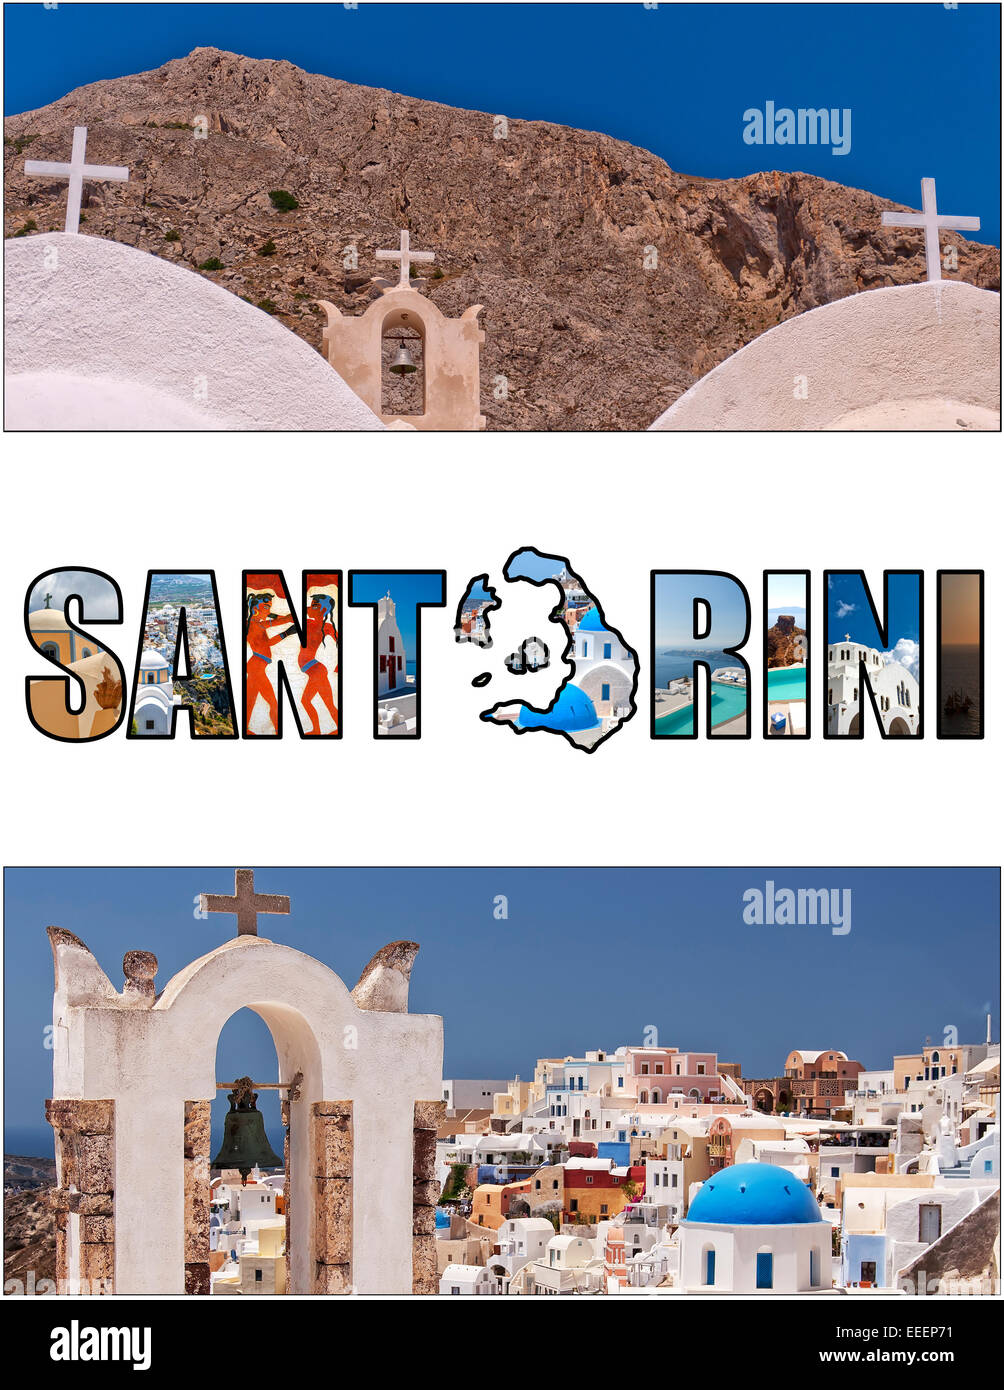 Un collage di immagini varie dal greco paradisiaca isola di Santorini. Tagliate la sempre più crescente popolare 2,33:1 rapporto di aspetto Foto Stock